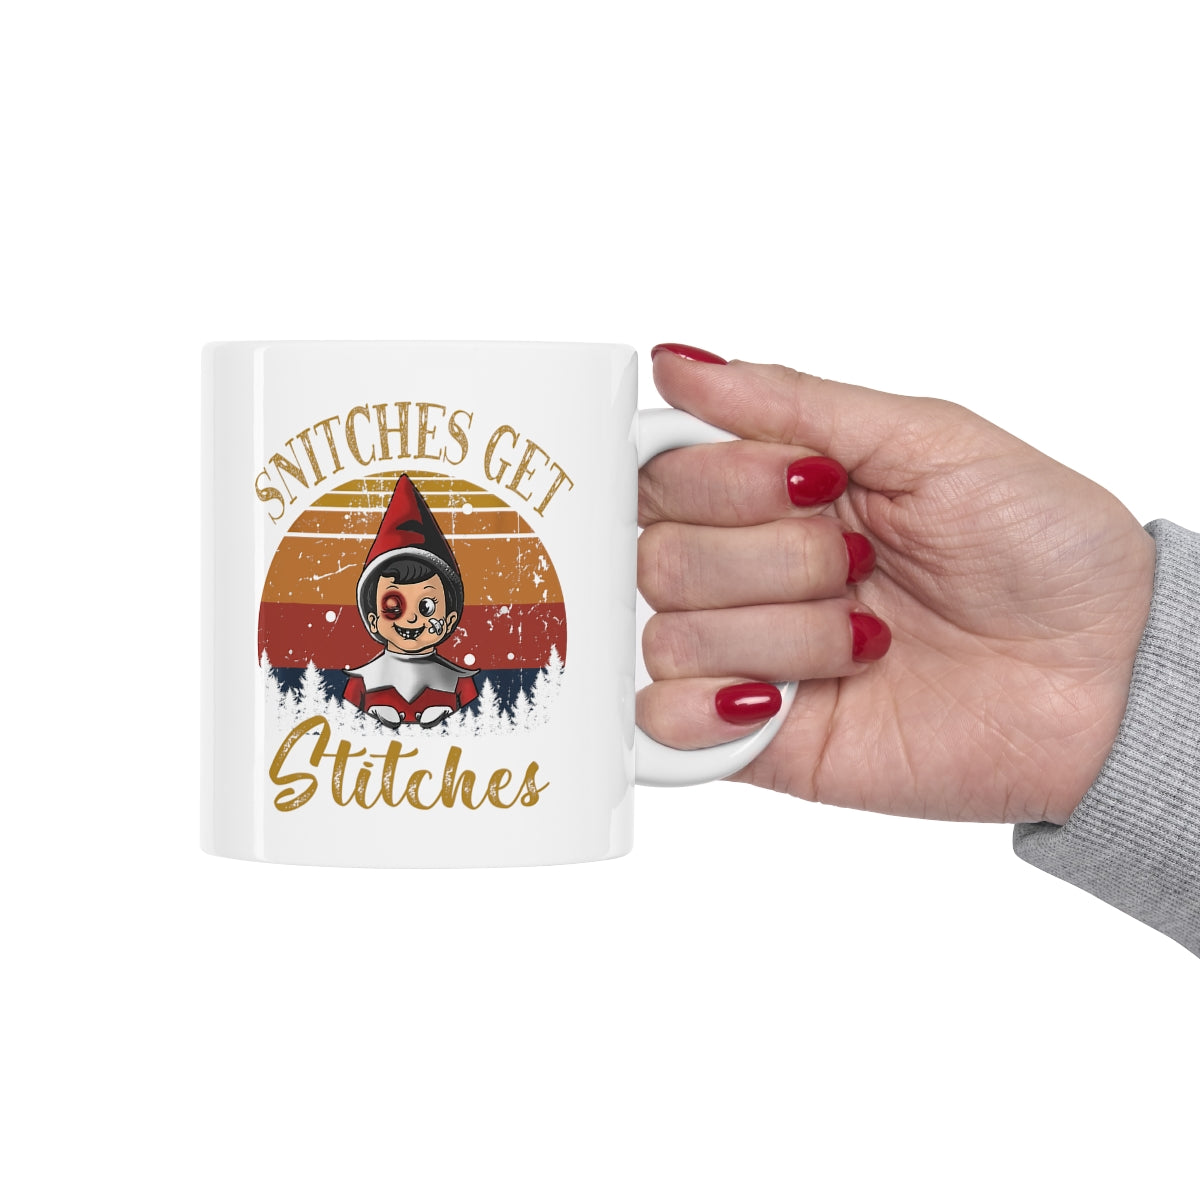 Snitches Get Stitches Elf Mug - Ceramic Mug 11oz